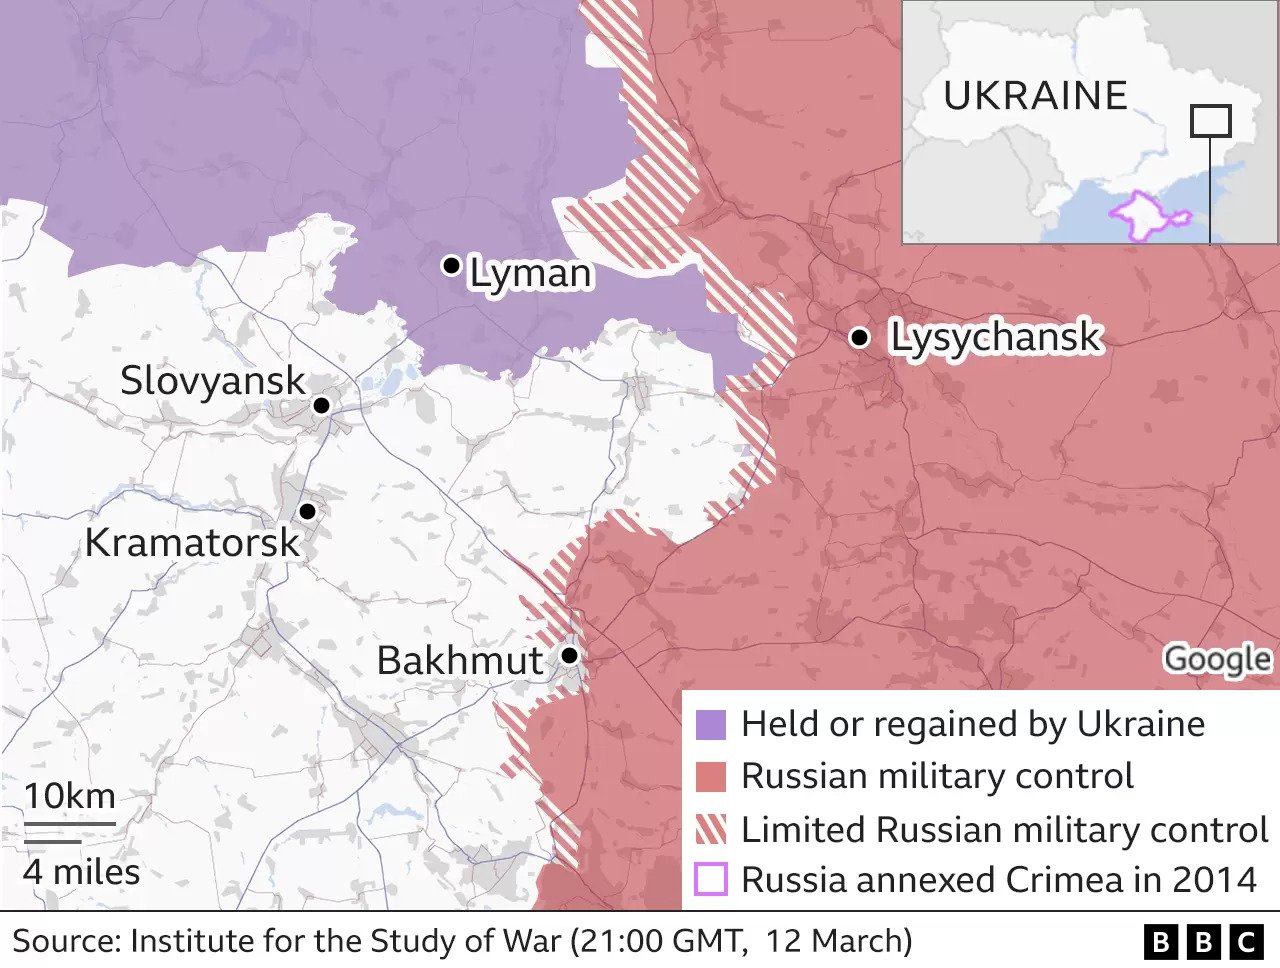 Map of Ukraine showing Russian and Ukraine held territories